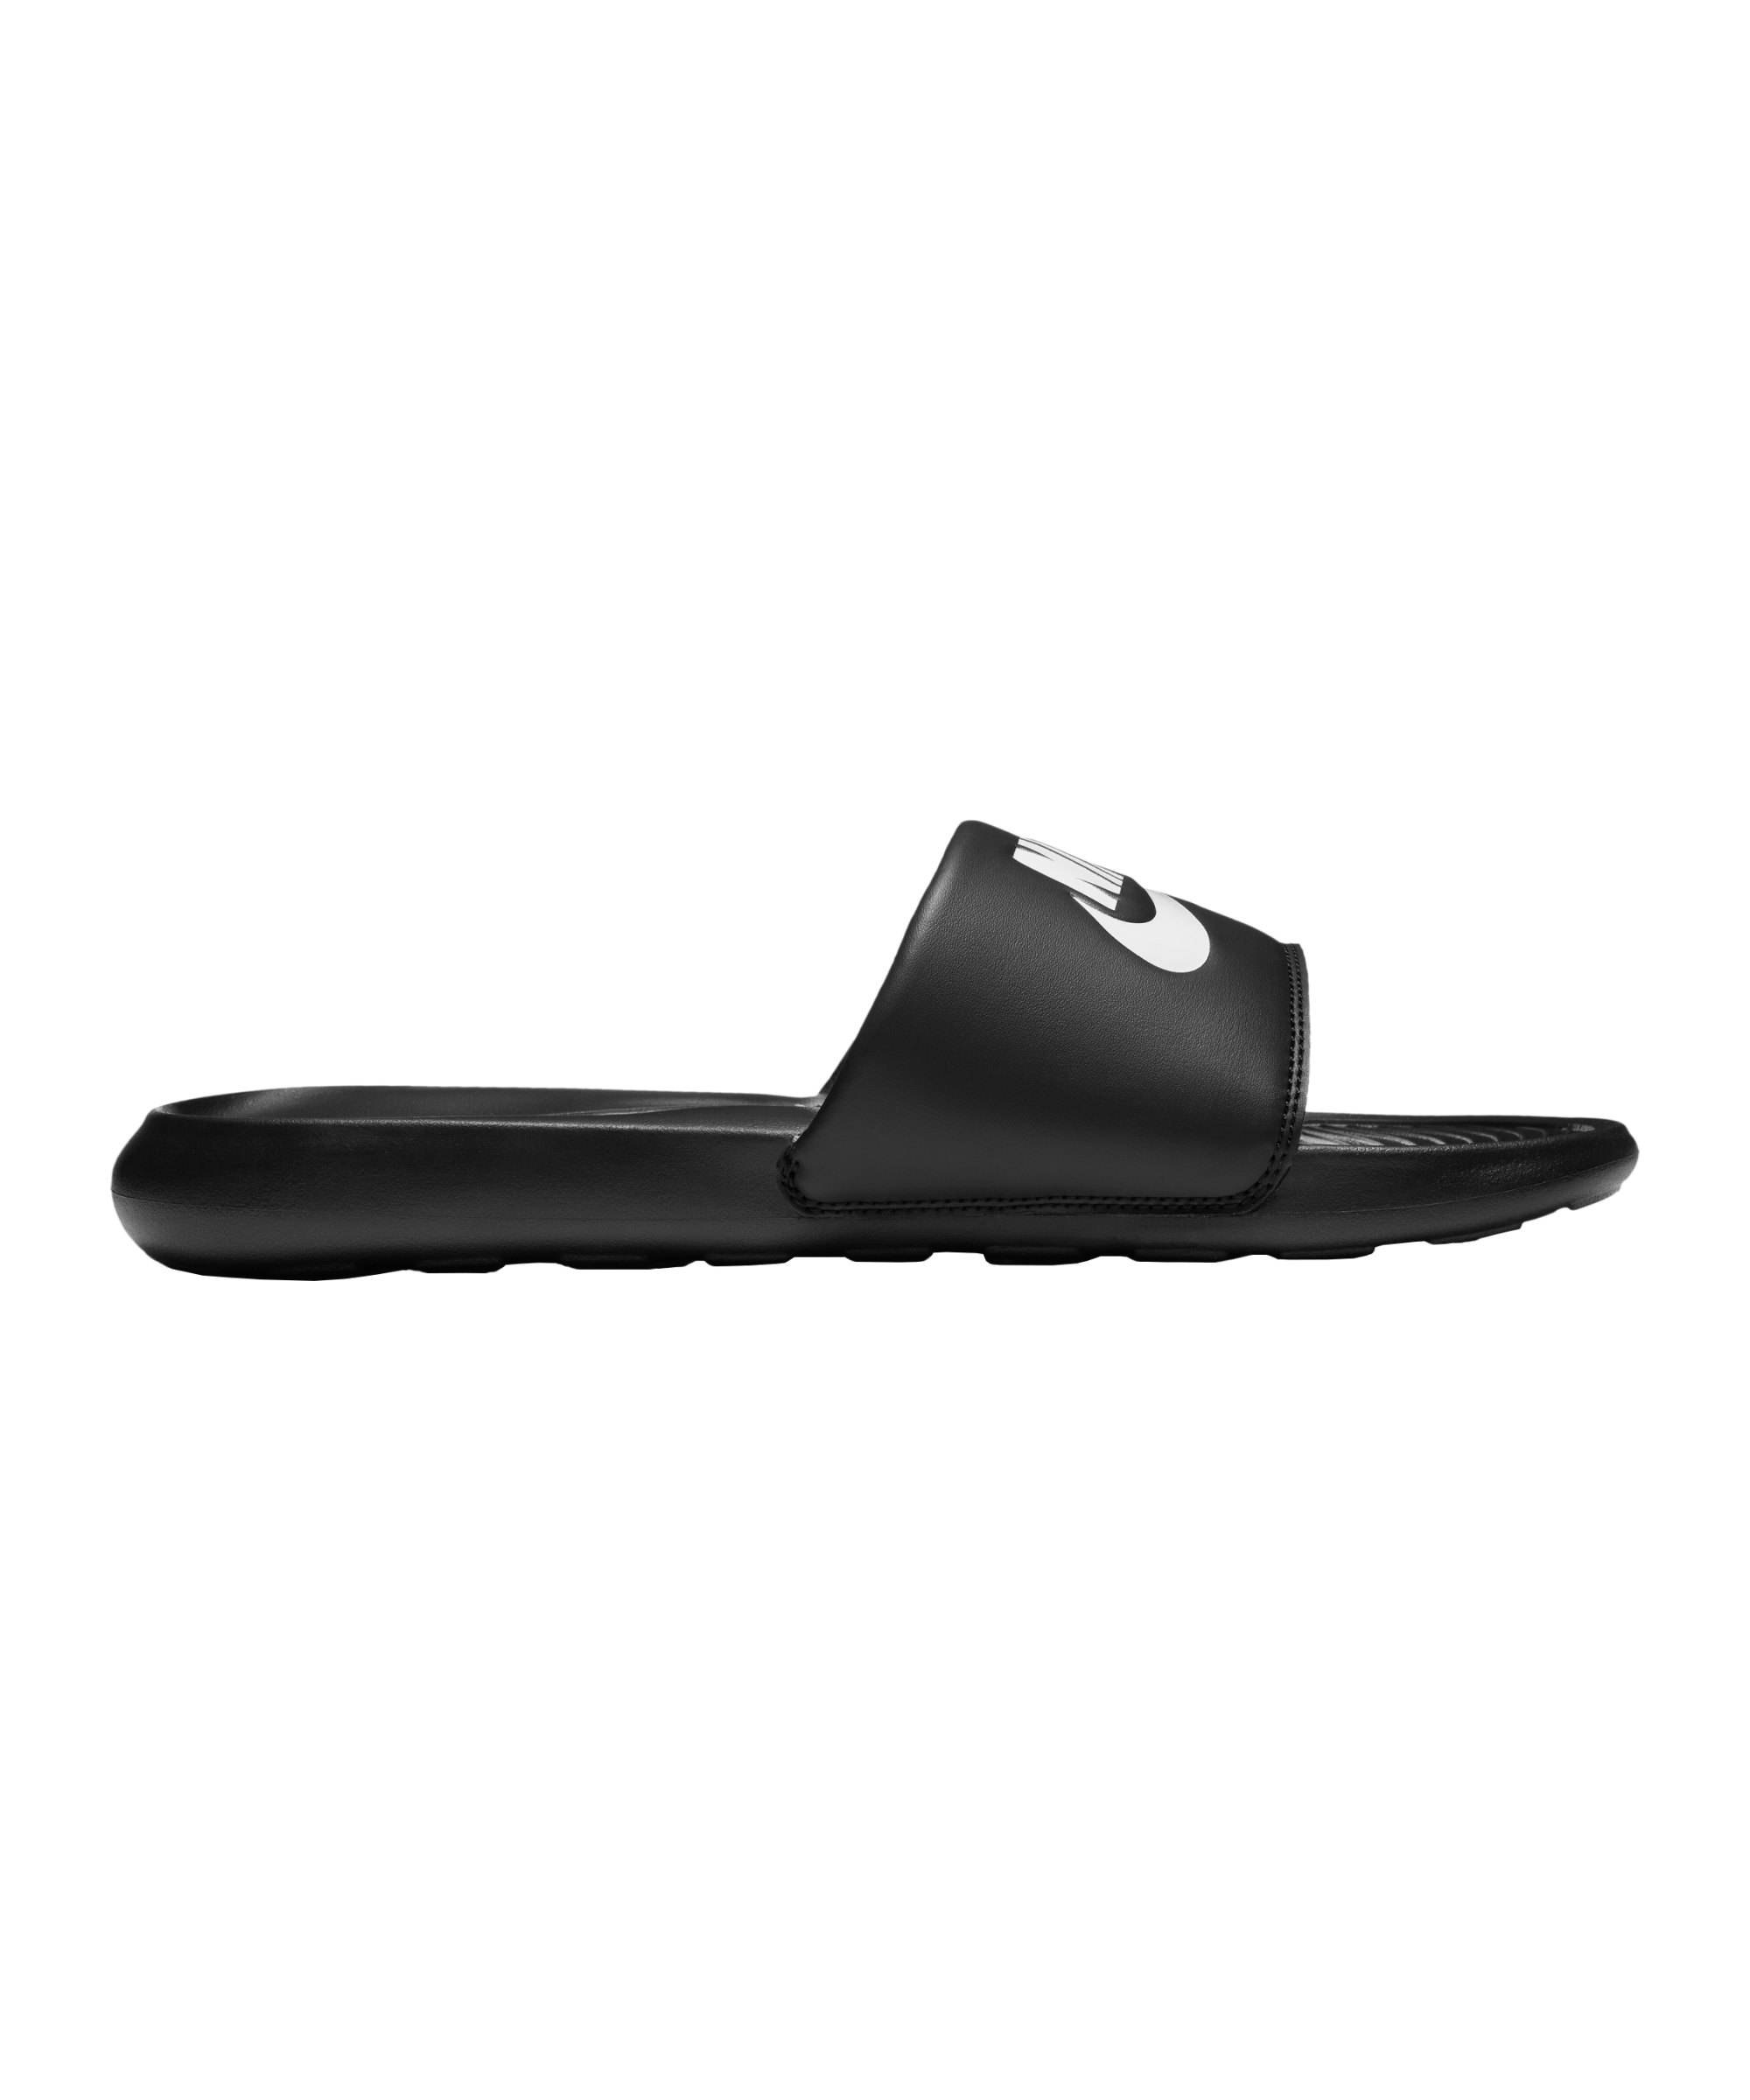 Nike Victori One Slide Badelatsche Schwarz F002 - schwarz